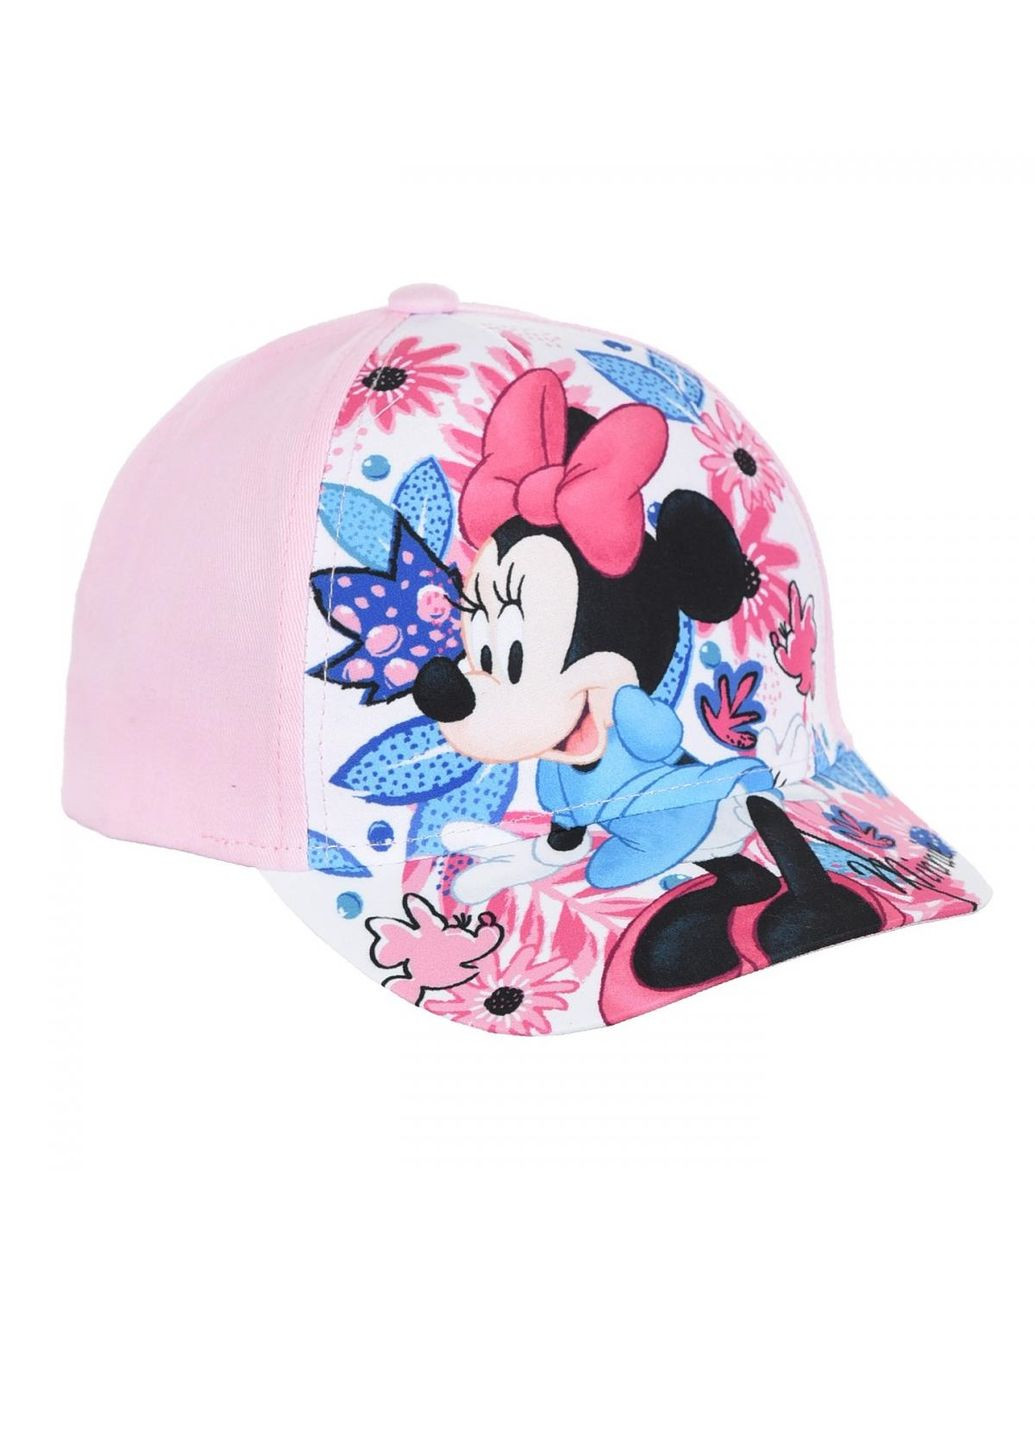 Кепка Minnie Mouse (Минни Маус) UE40011 EU Disney кепка (290252698)